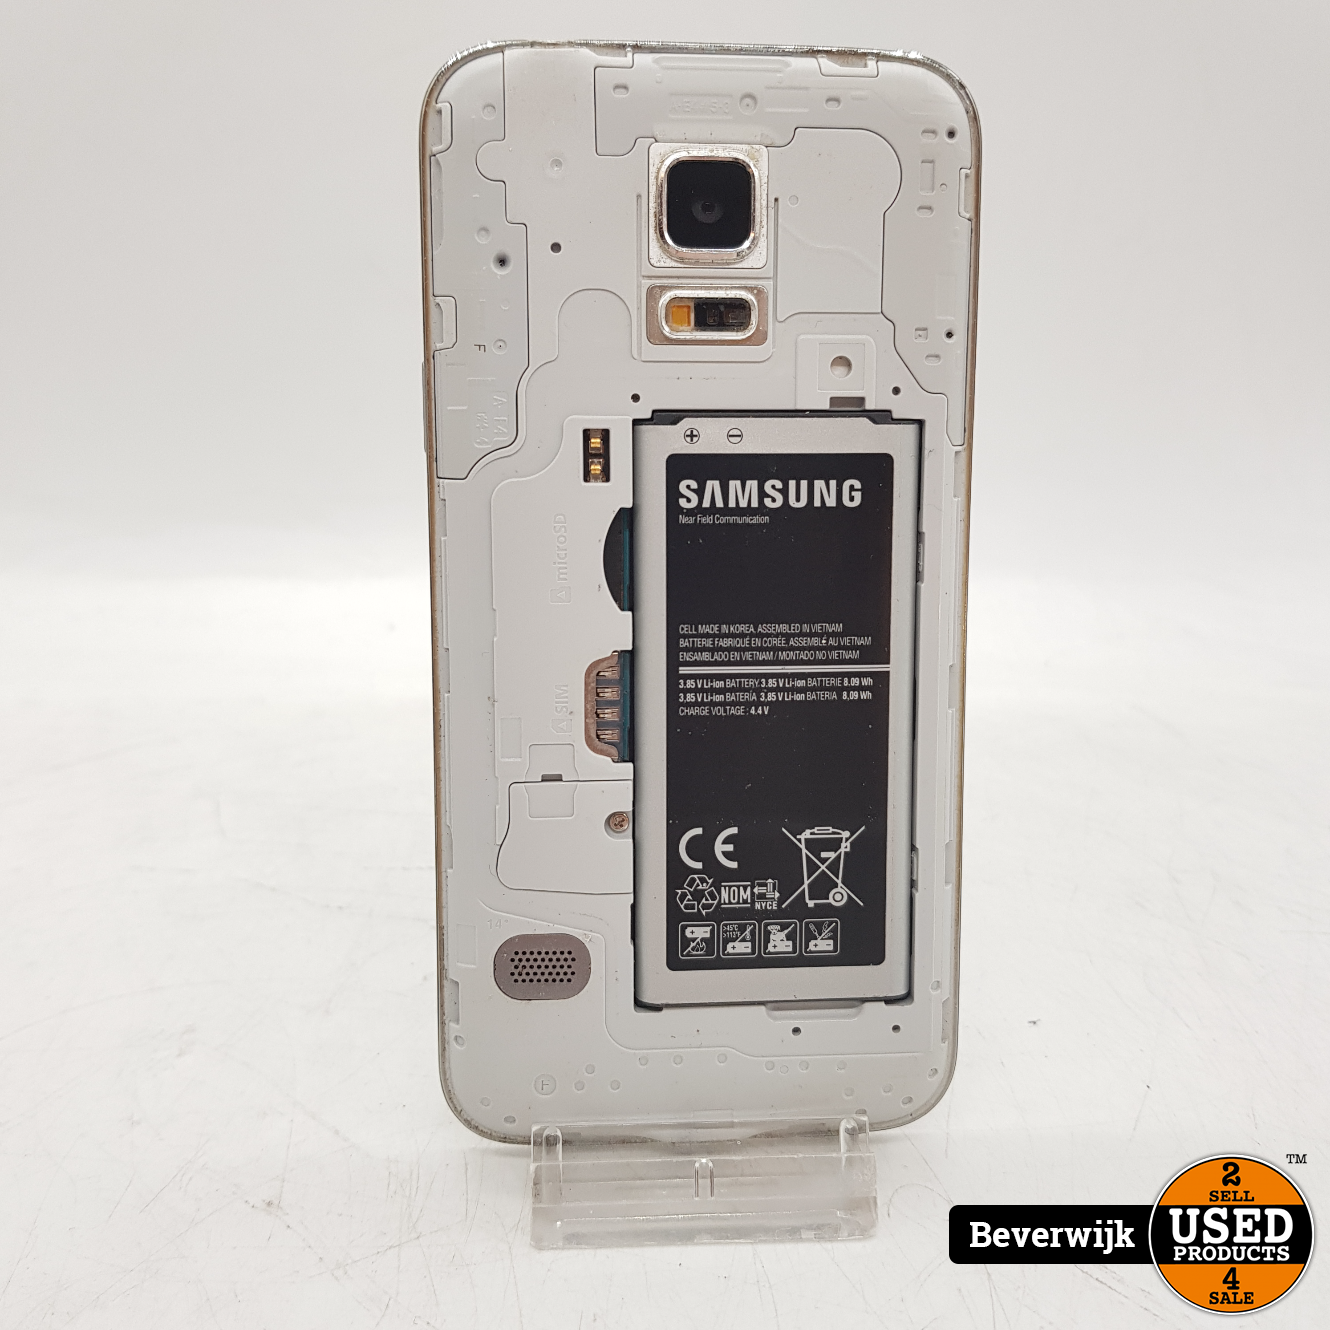 Aanwezigheid Bewolkt ik ben trots Samsung Galaxy S5 Mini 8 Gb - In Goede Staat - Used Products Beverwijk